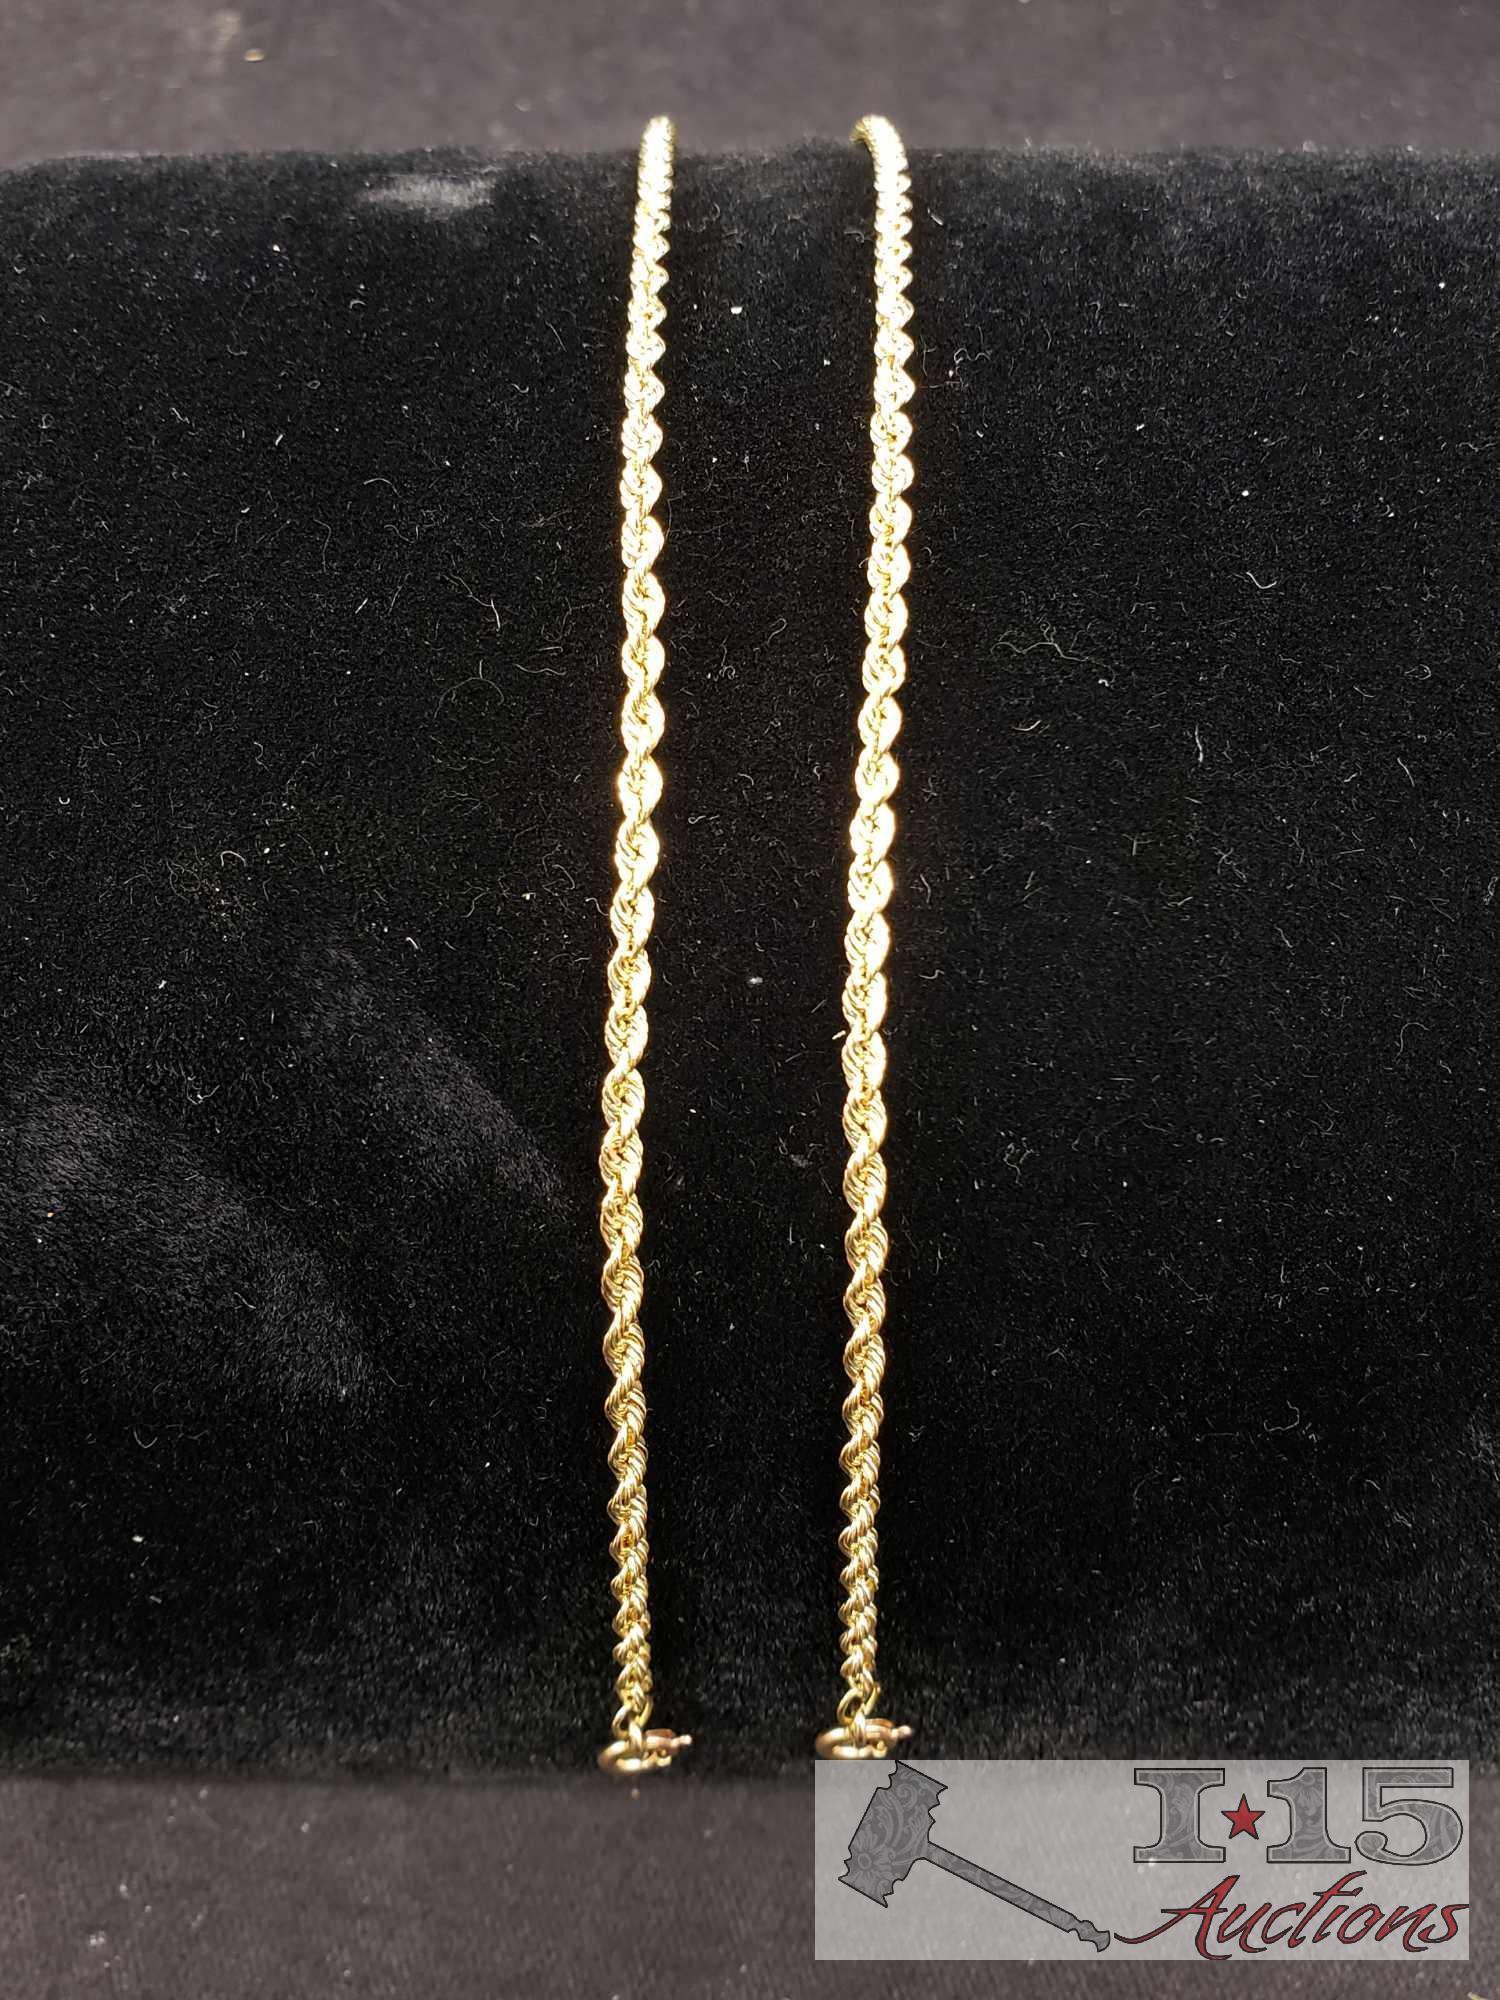 Mark Anthony 14k Gold Necklace and 2 Bracelets Marked 14k